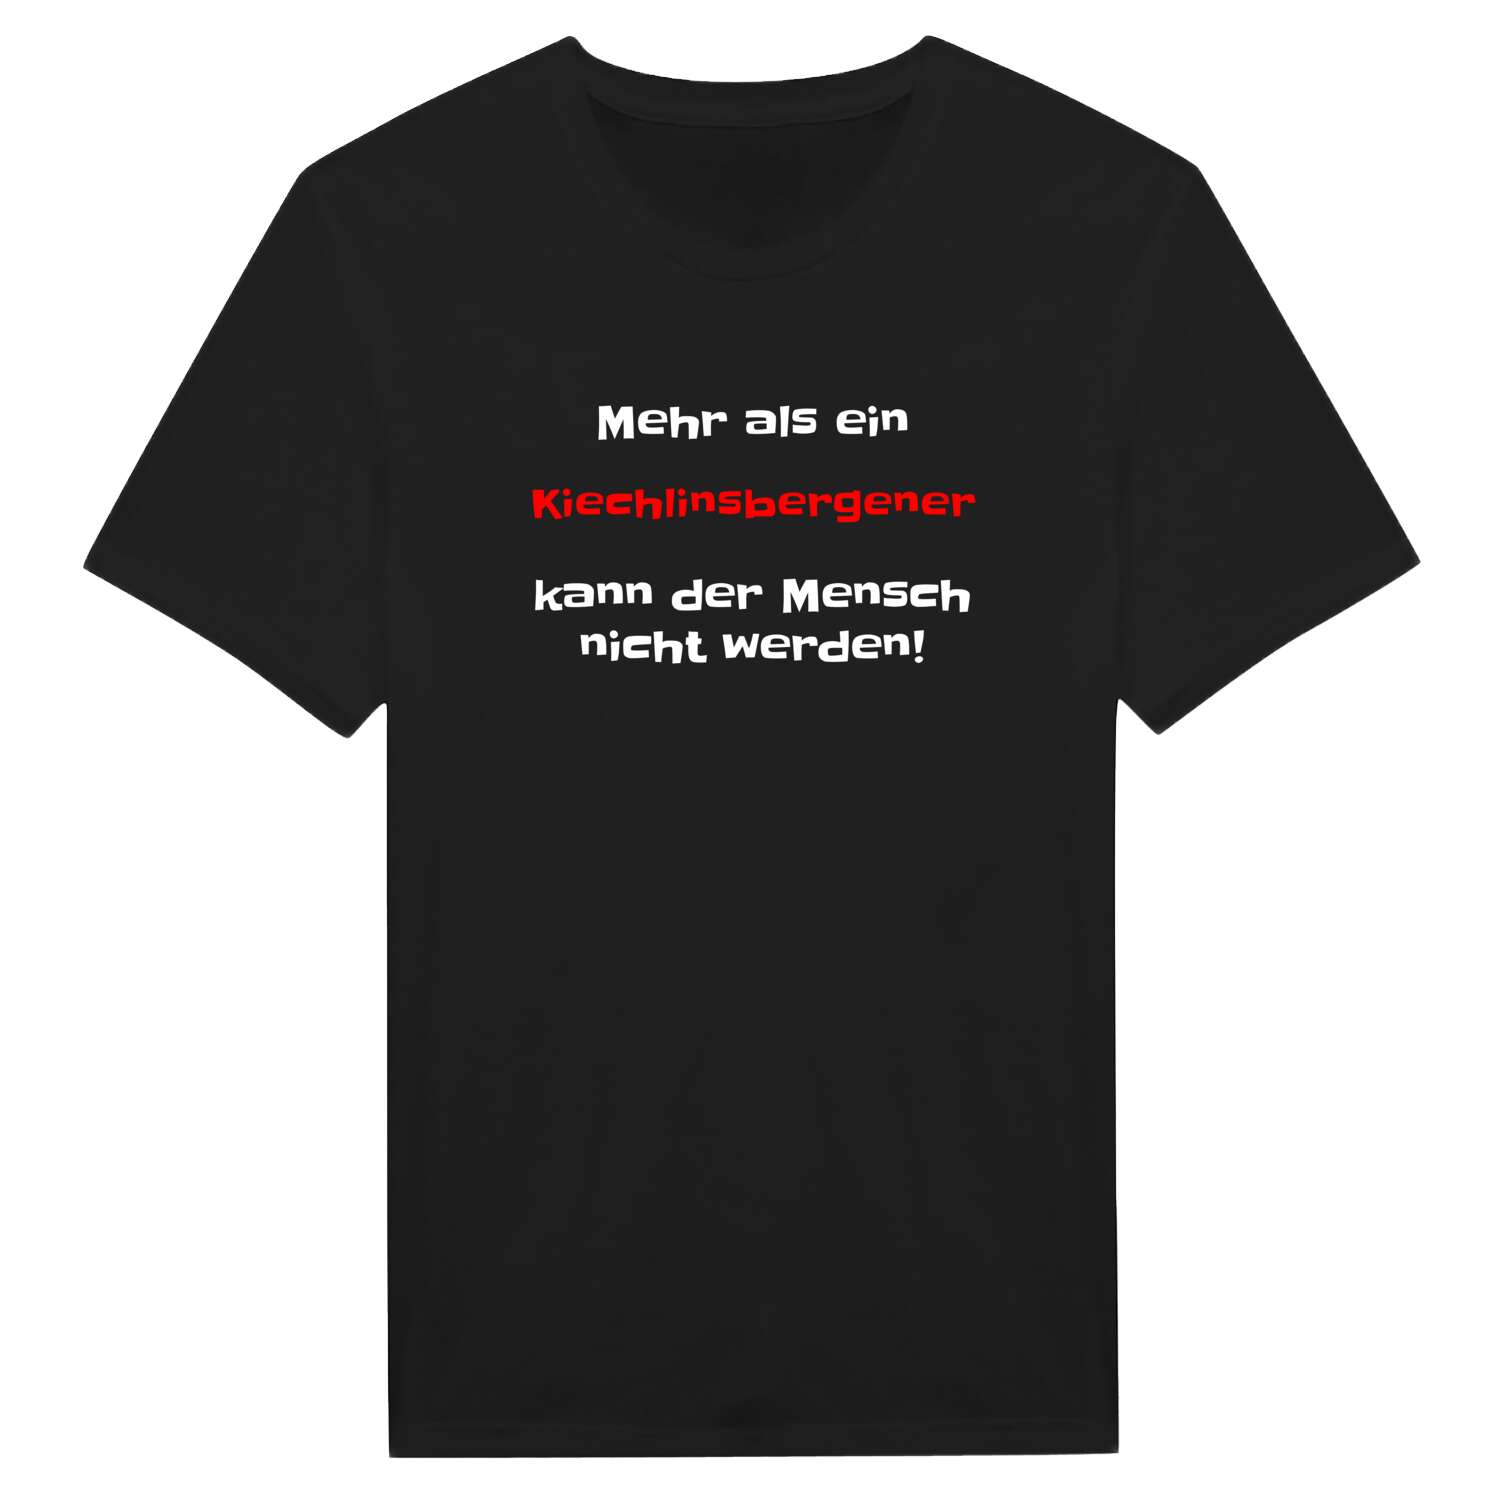 Kiechlinsbergen T-Shirt »Mehr als ein«